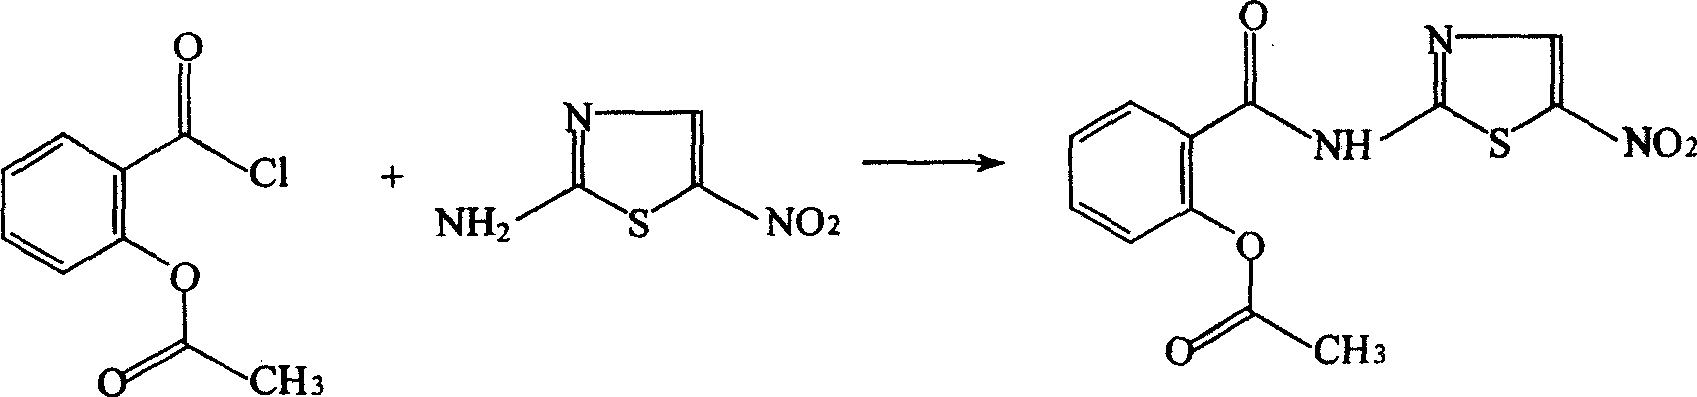 Method for preparing nitazoxanide